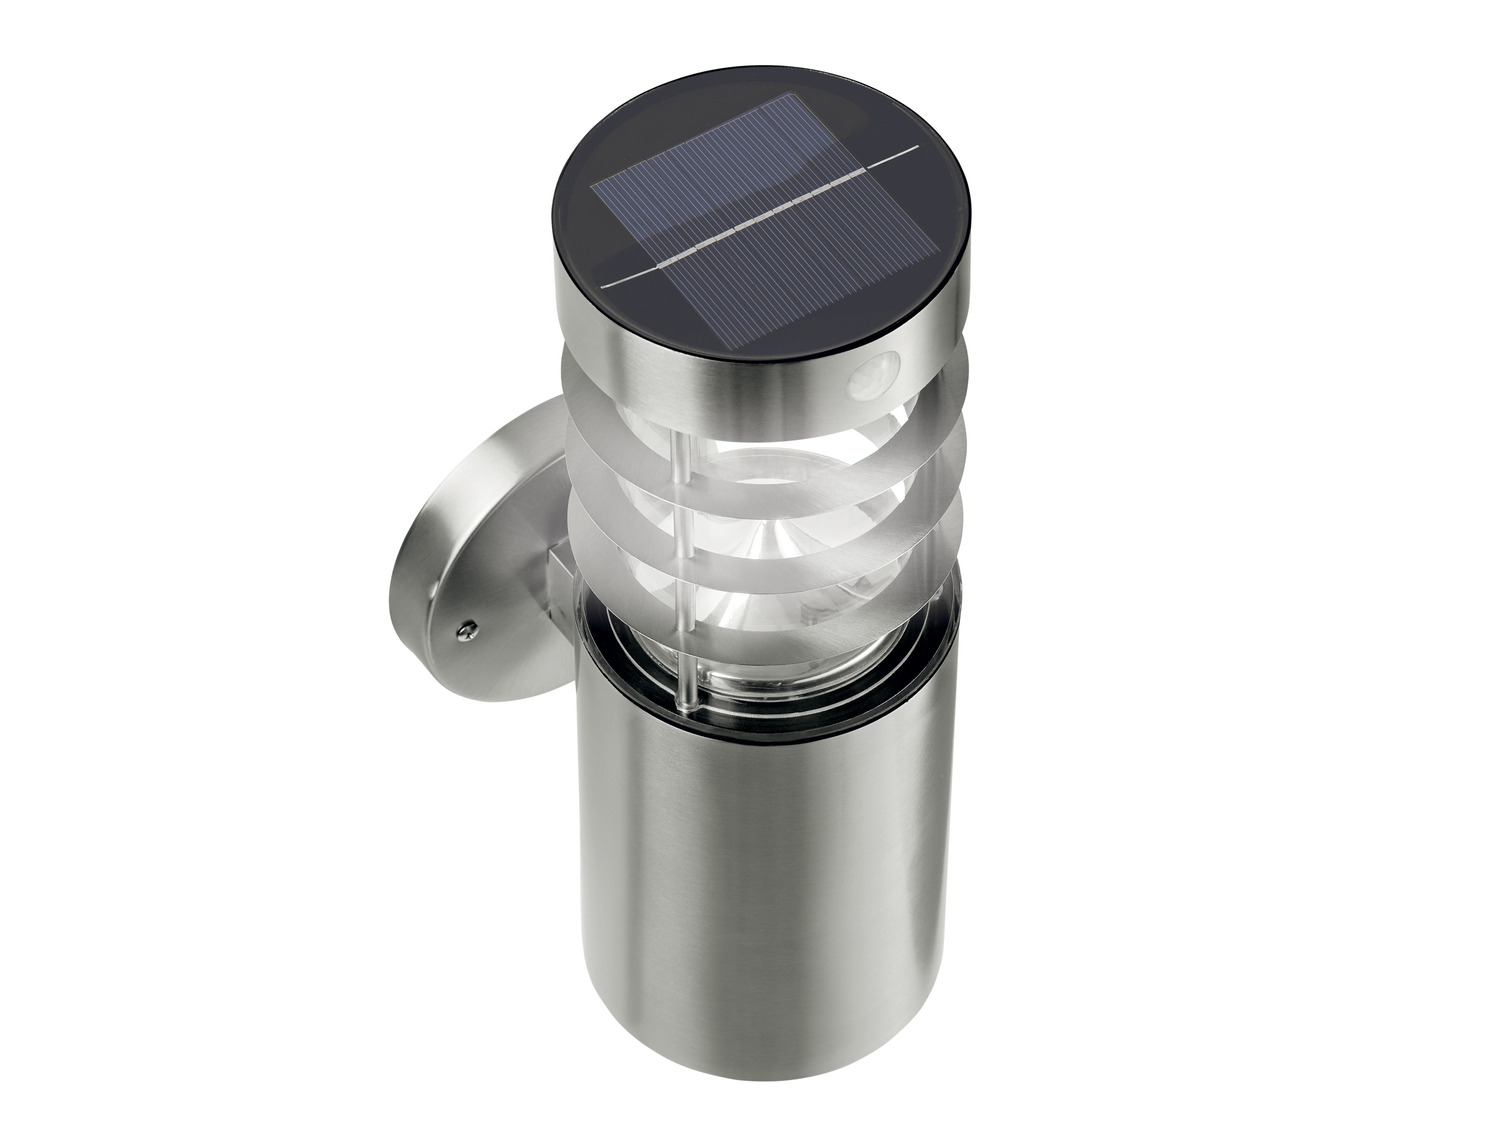 Lampada LED ad energia solare con rilevatore di movimento Livarno Lux, prezzo 17.99 ...